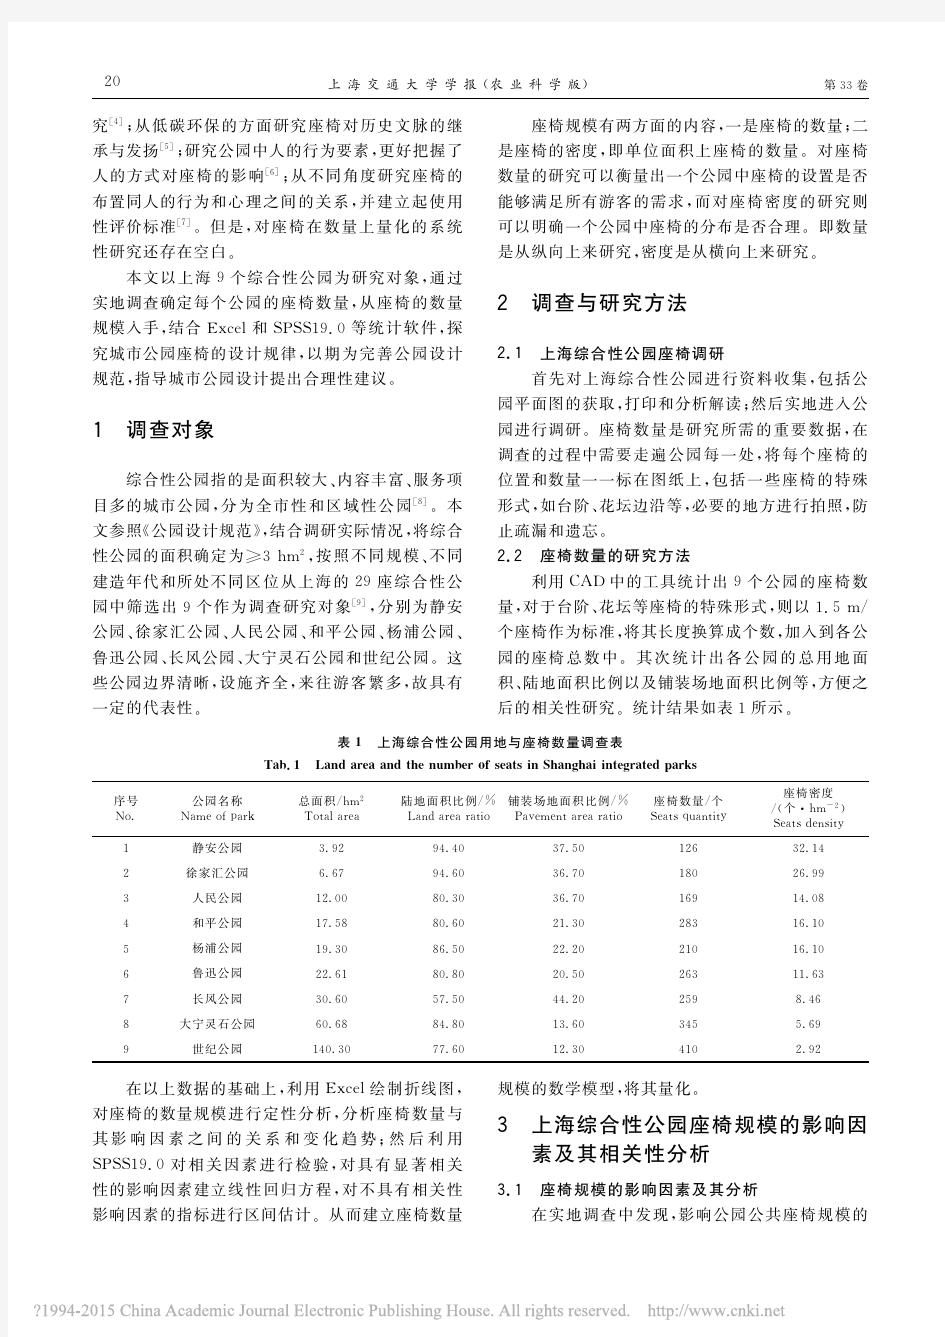 上海城市综合性公园座椅规模调查研究_李冰